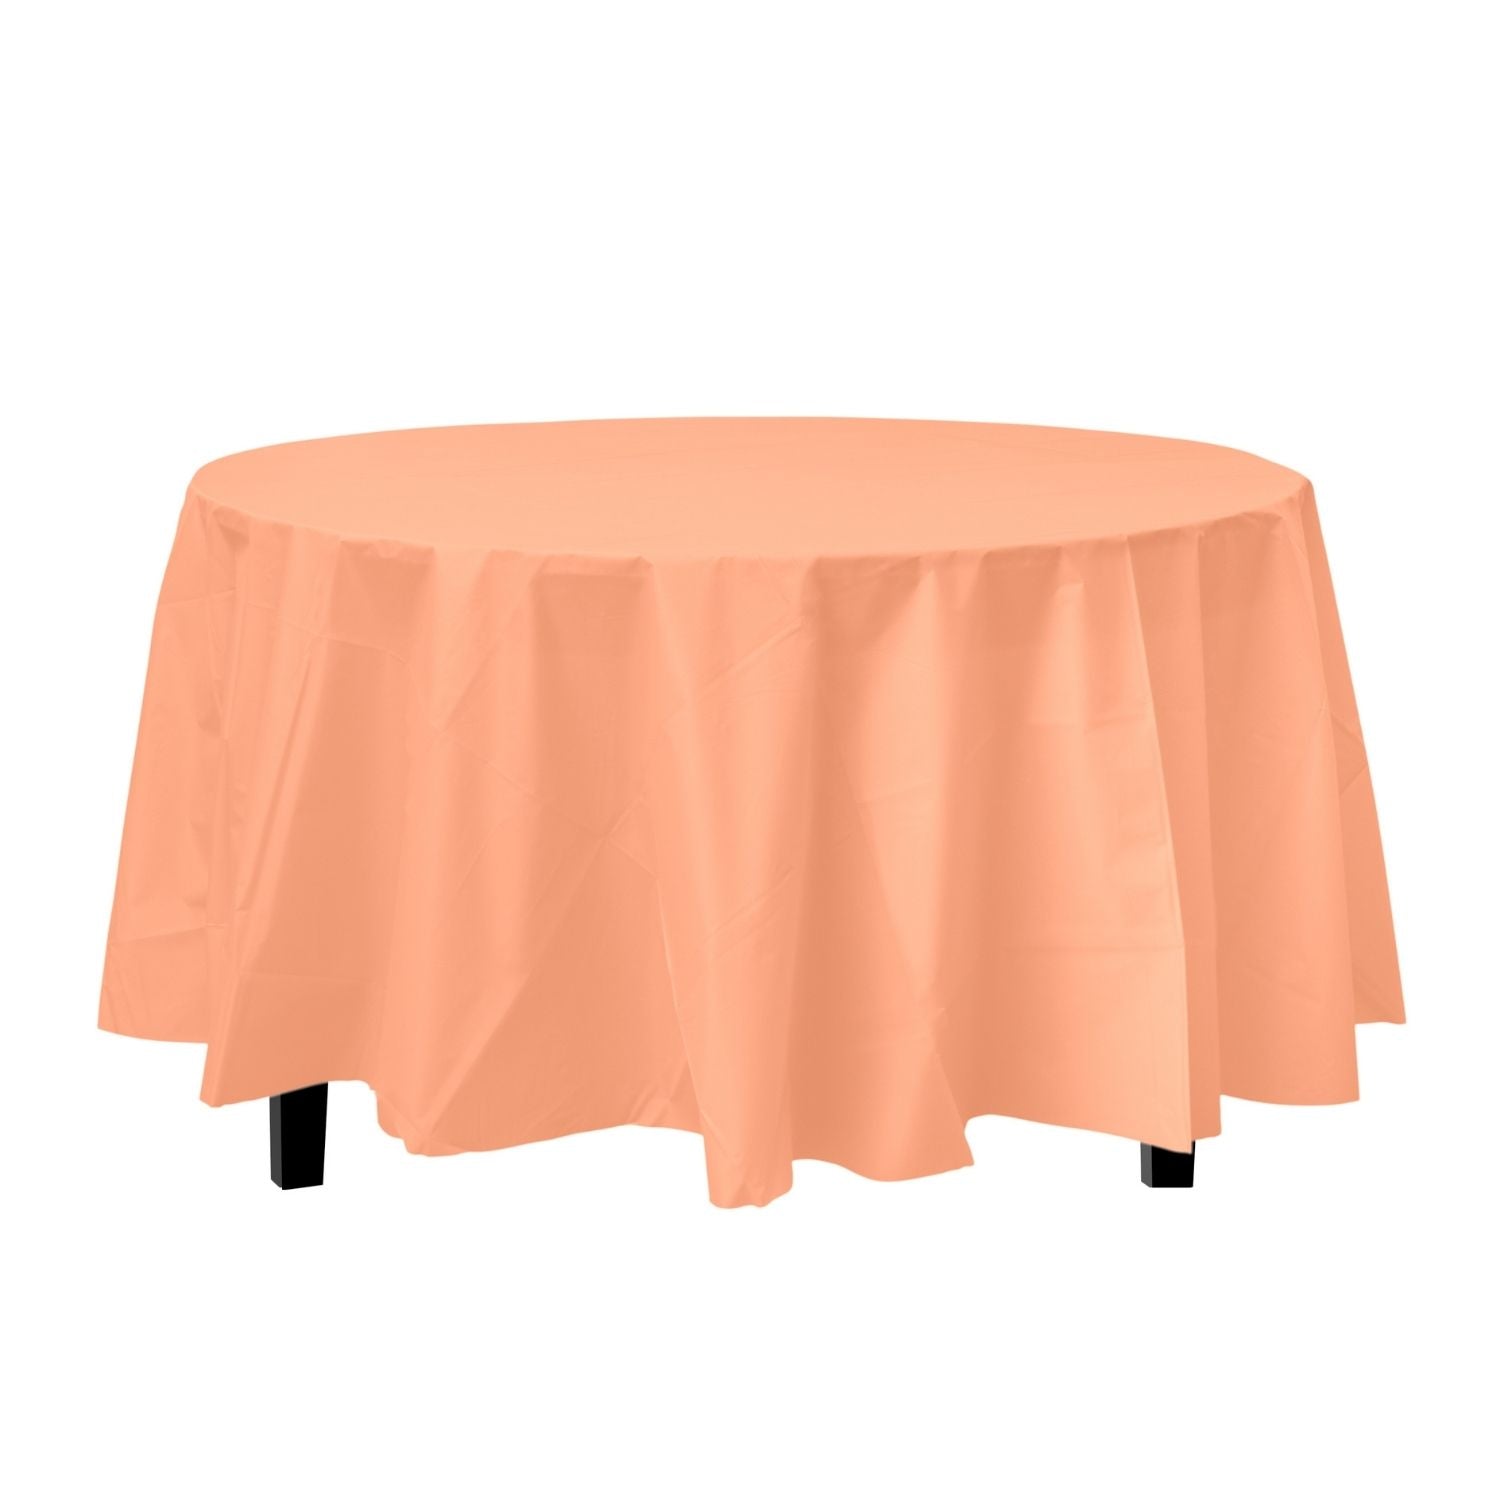 Premium Round Peach Plastic Tablecloth | 96 Count